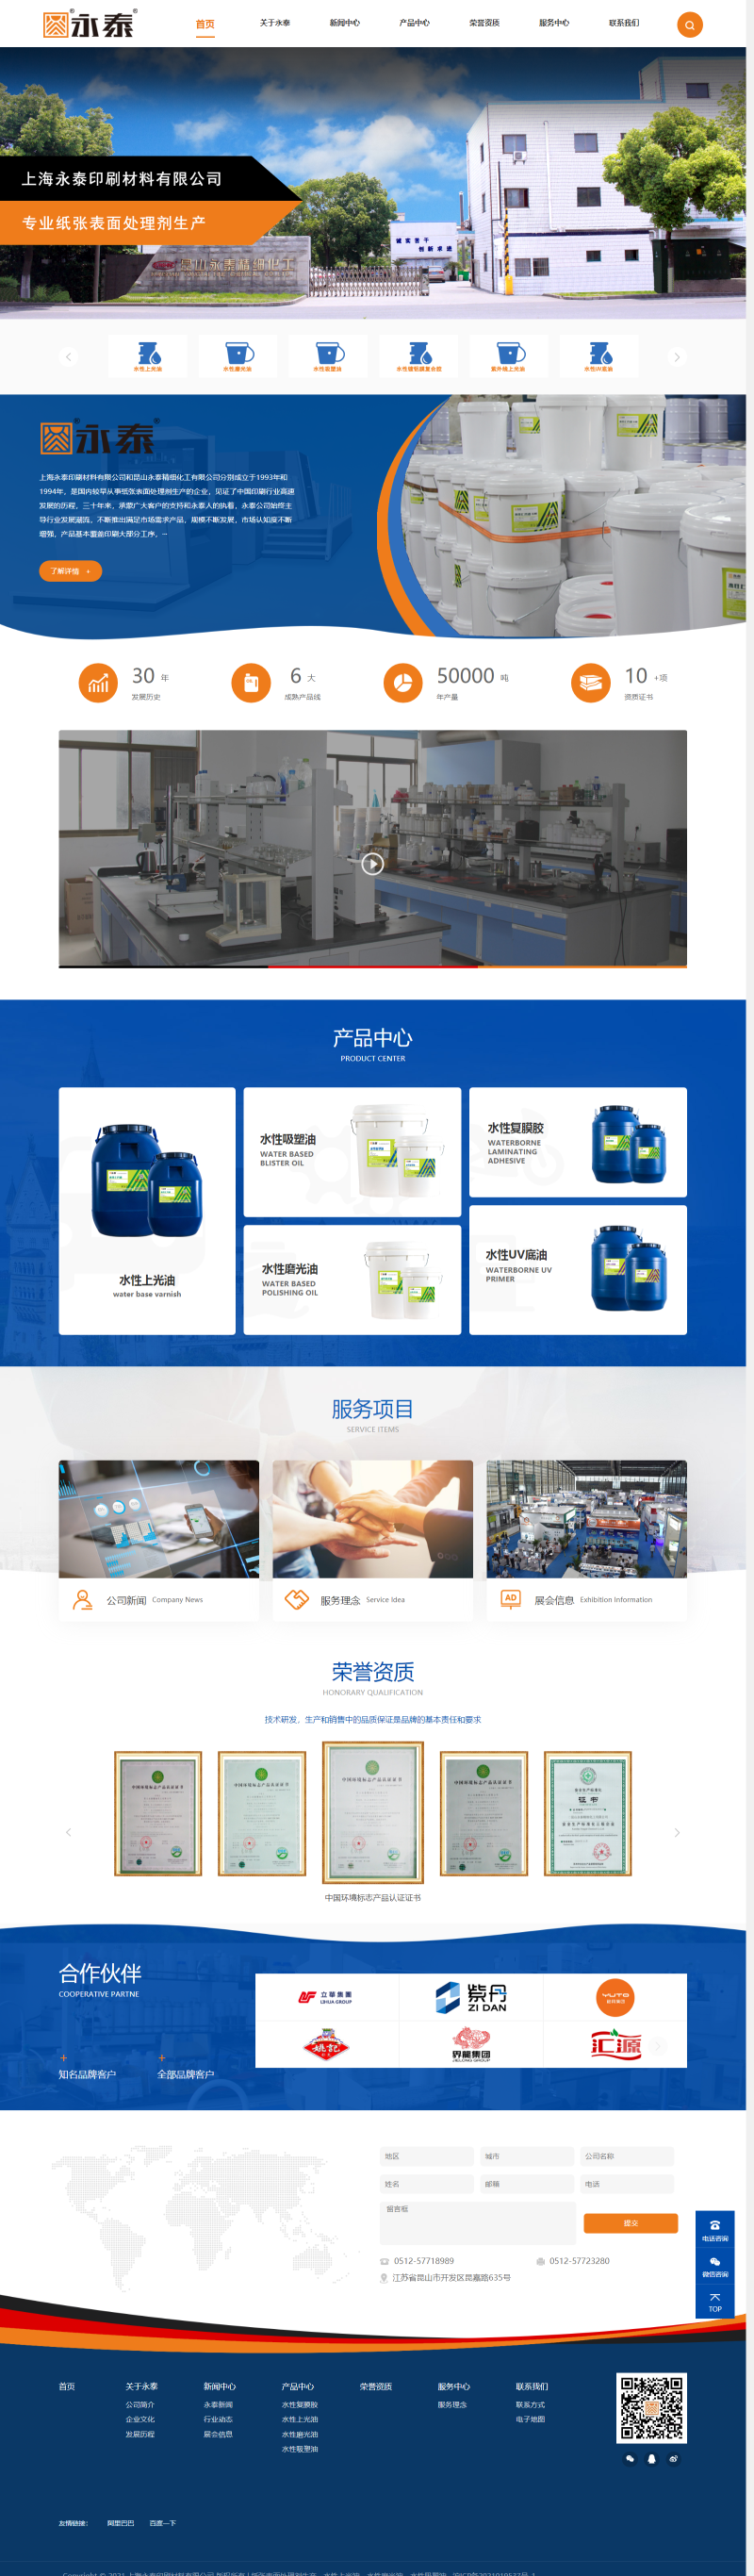 上海永泰印刷材料有限公司-上海永泰印刷材料有限公司.png